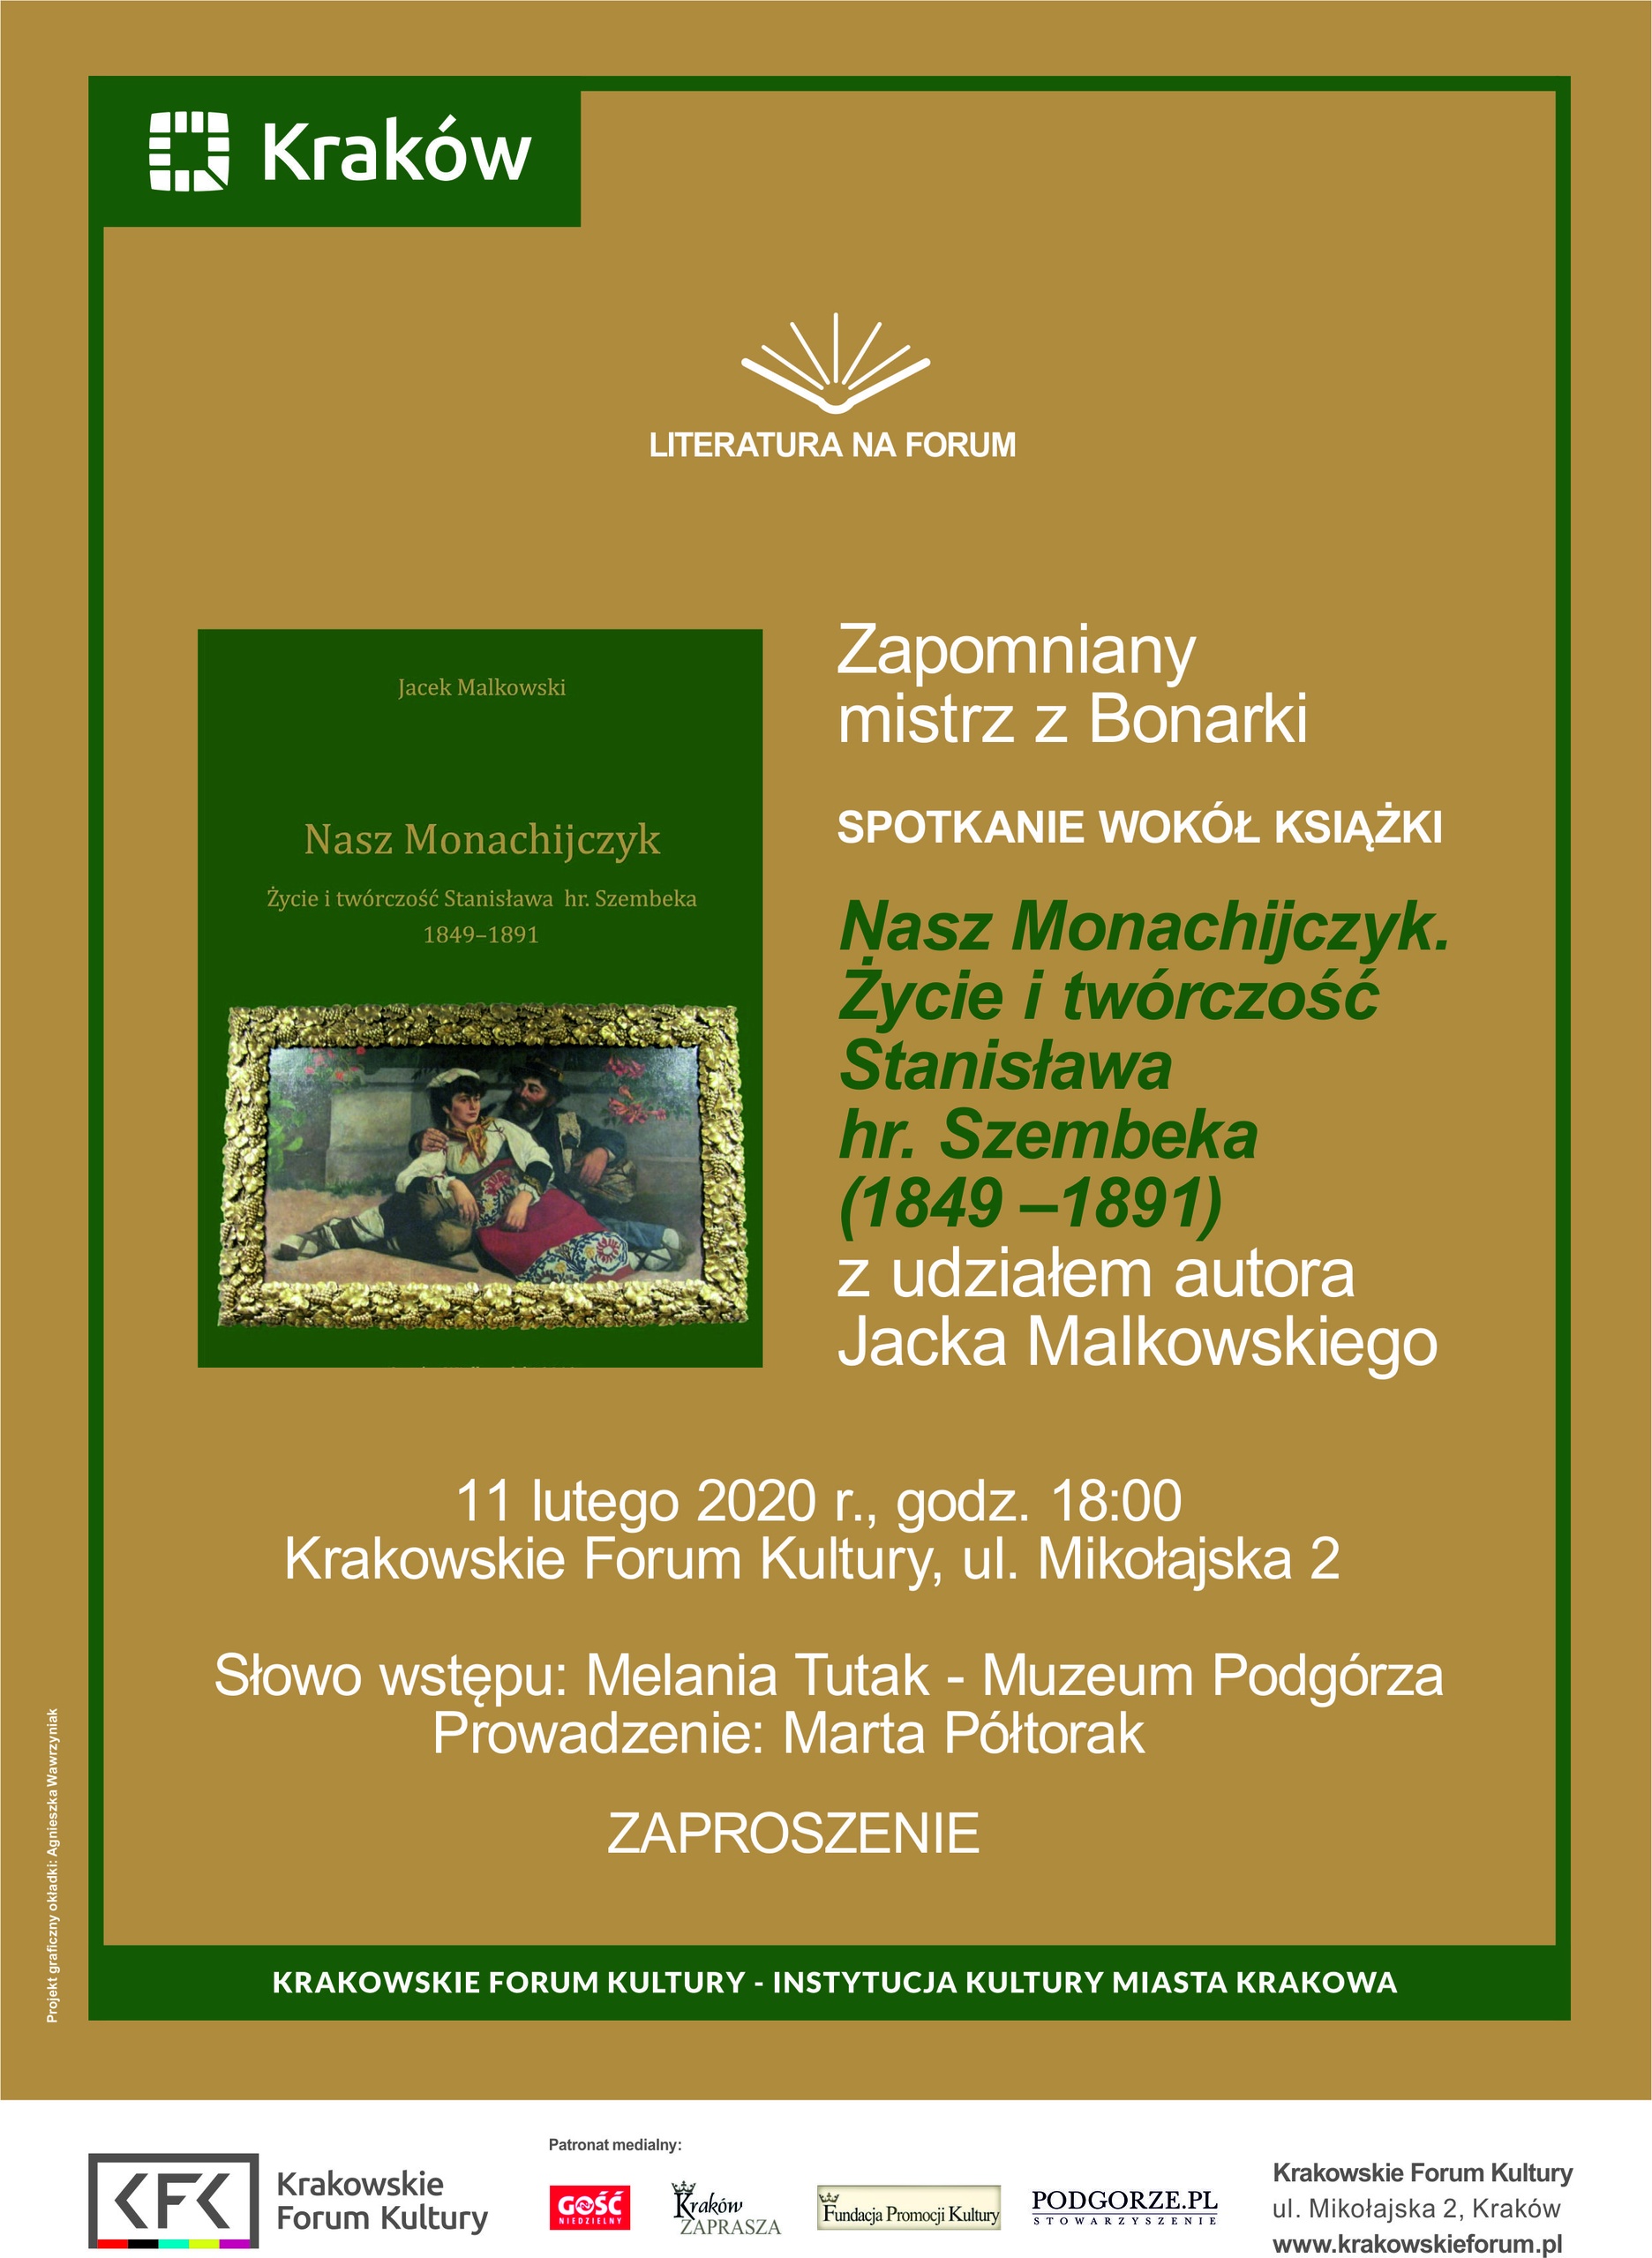 Zdjęcie do artykułu "Książka naszego autora Jacka Malkowskiego promowana w Krakowie"